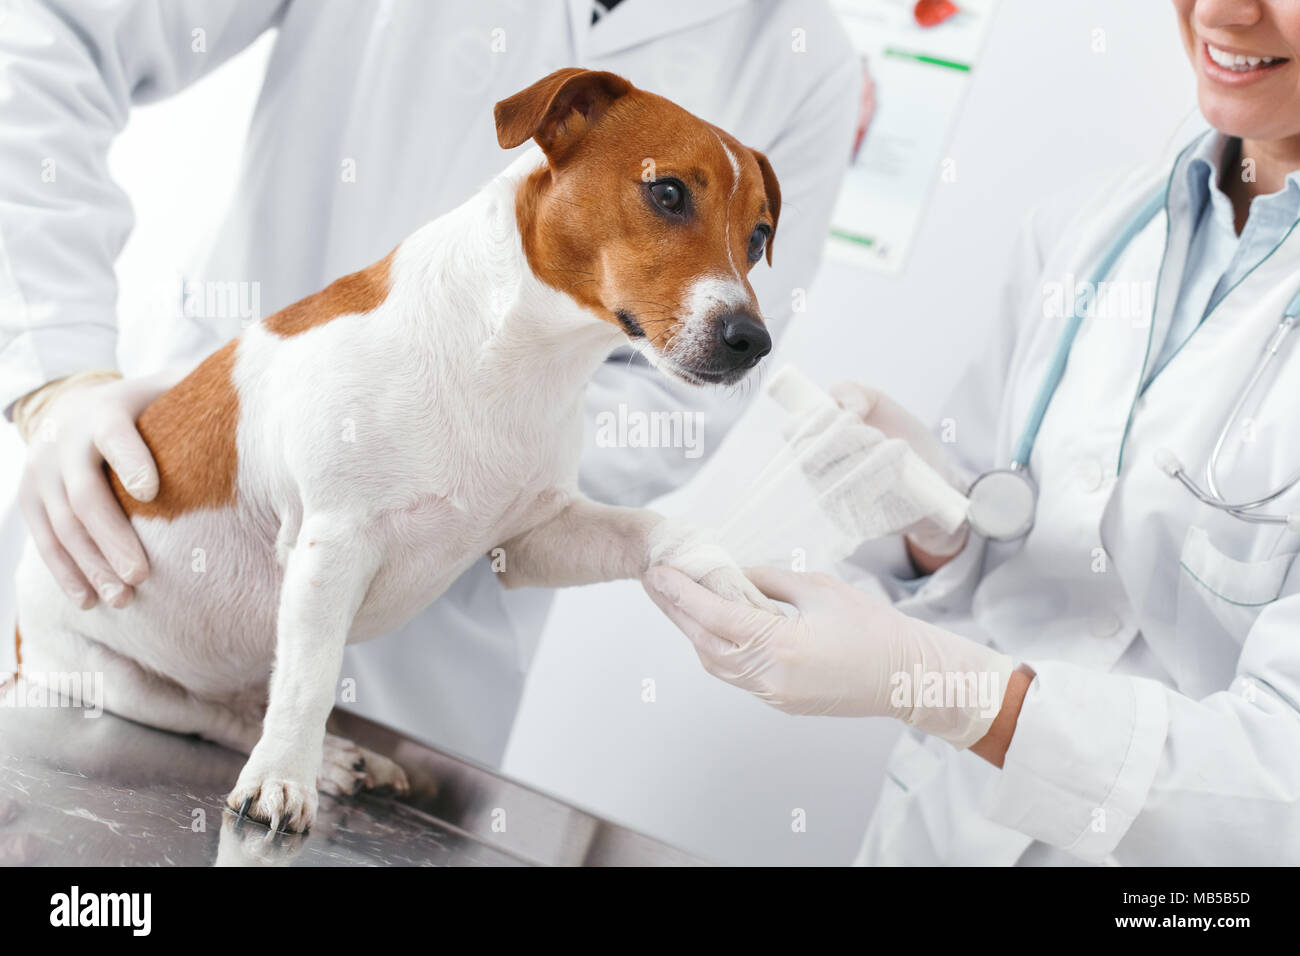 Fracture de la patte du chien, imposer un plâtre. Concept clinique vétérinaire. Services d'un médecin pour les animaux, la santé et le traitement des animaux domestiques Banque D'Images